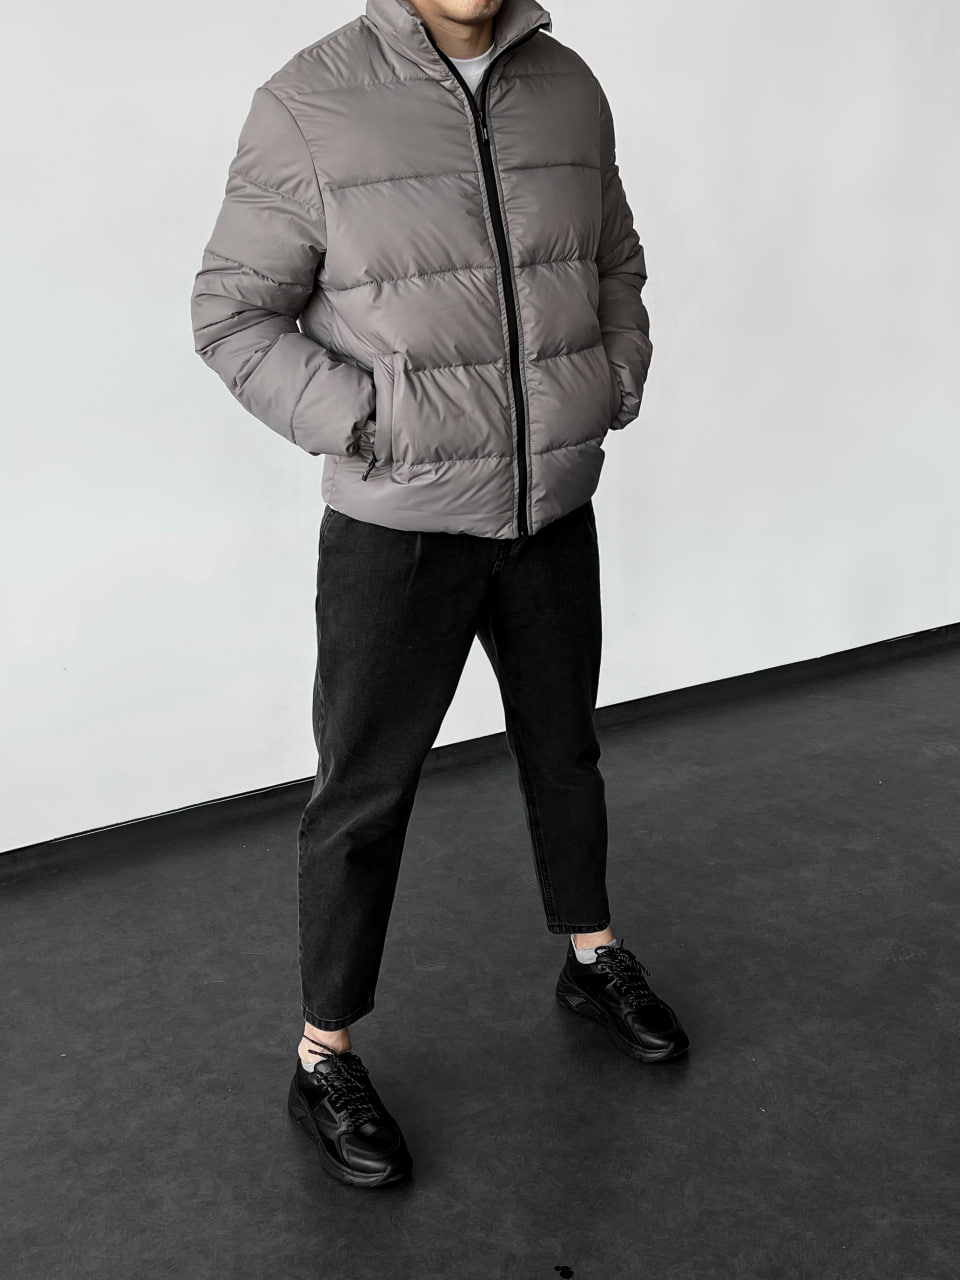 Мужская куртка стеганая демисезонная Reload Blackout тёмно-серый - Фото 4